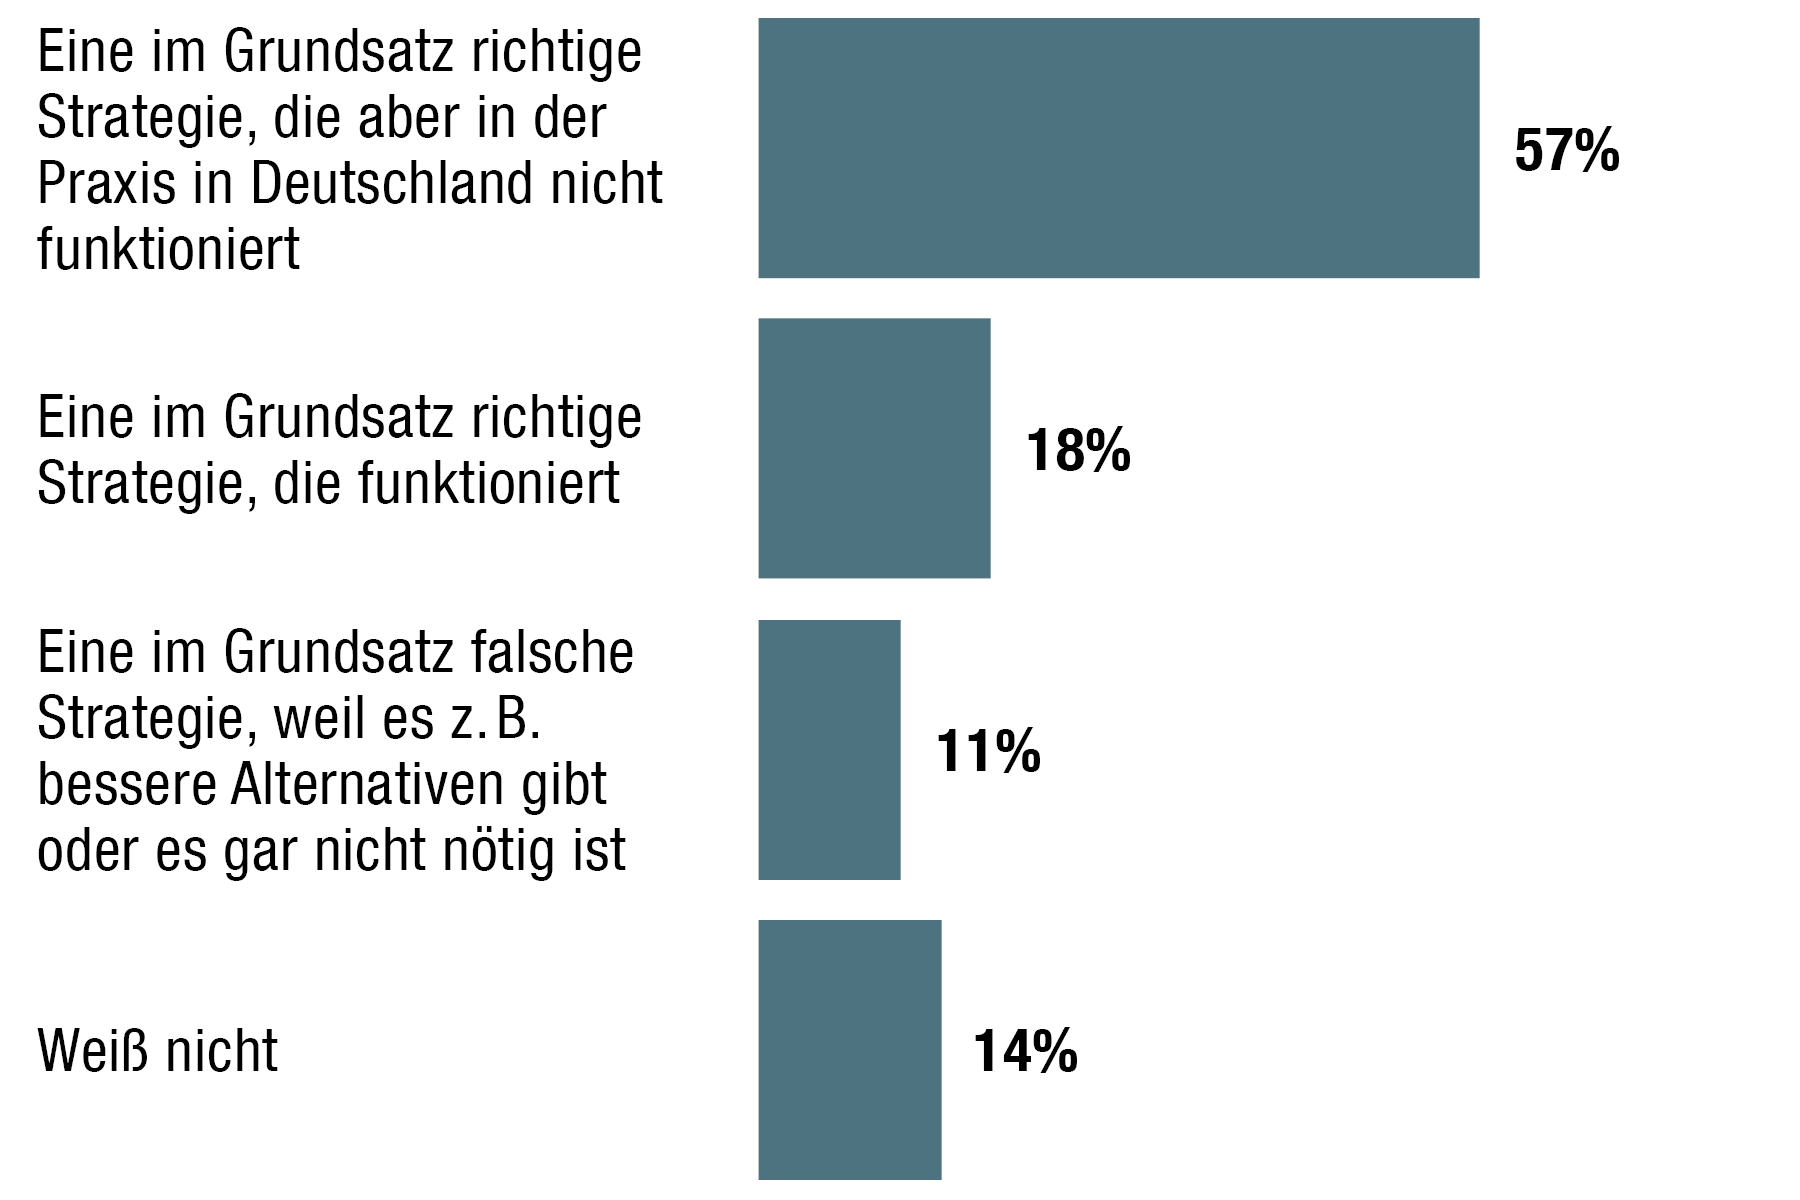 Balkendiagramm: 57% sind der Meinung, dass es im Grundsatz eine richitge Strategie ist, die in der Praxis aber nicht funktioniert in Deutschland.